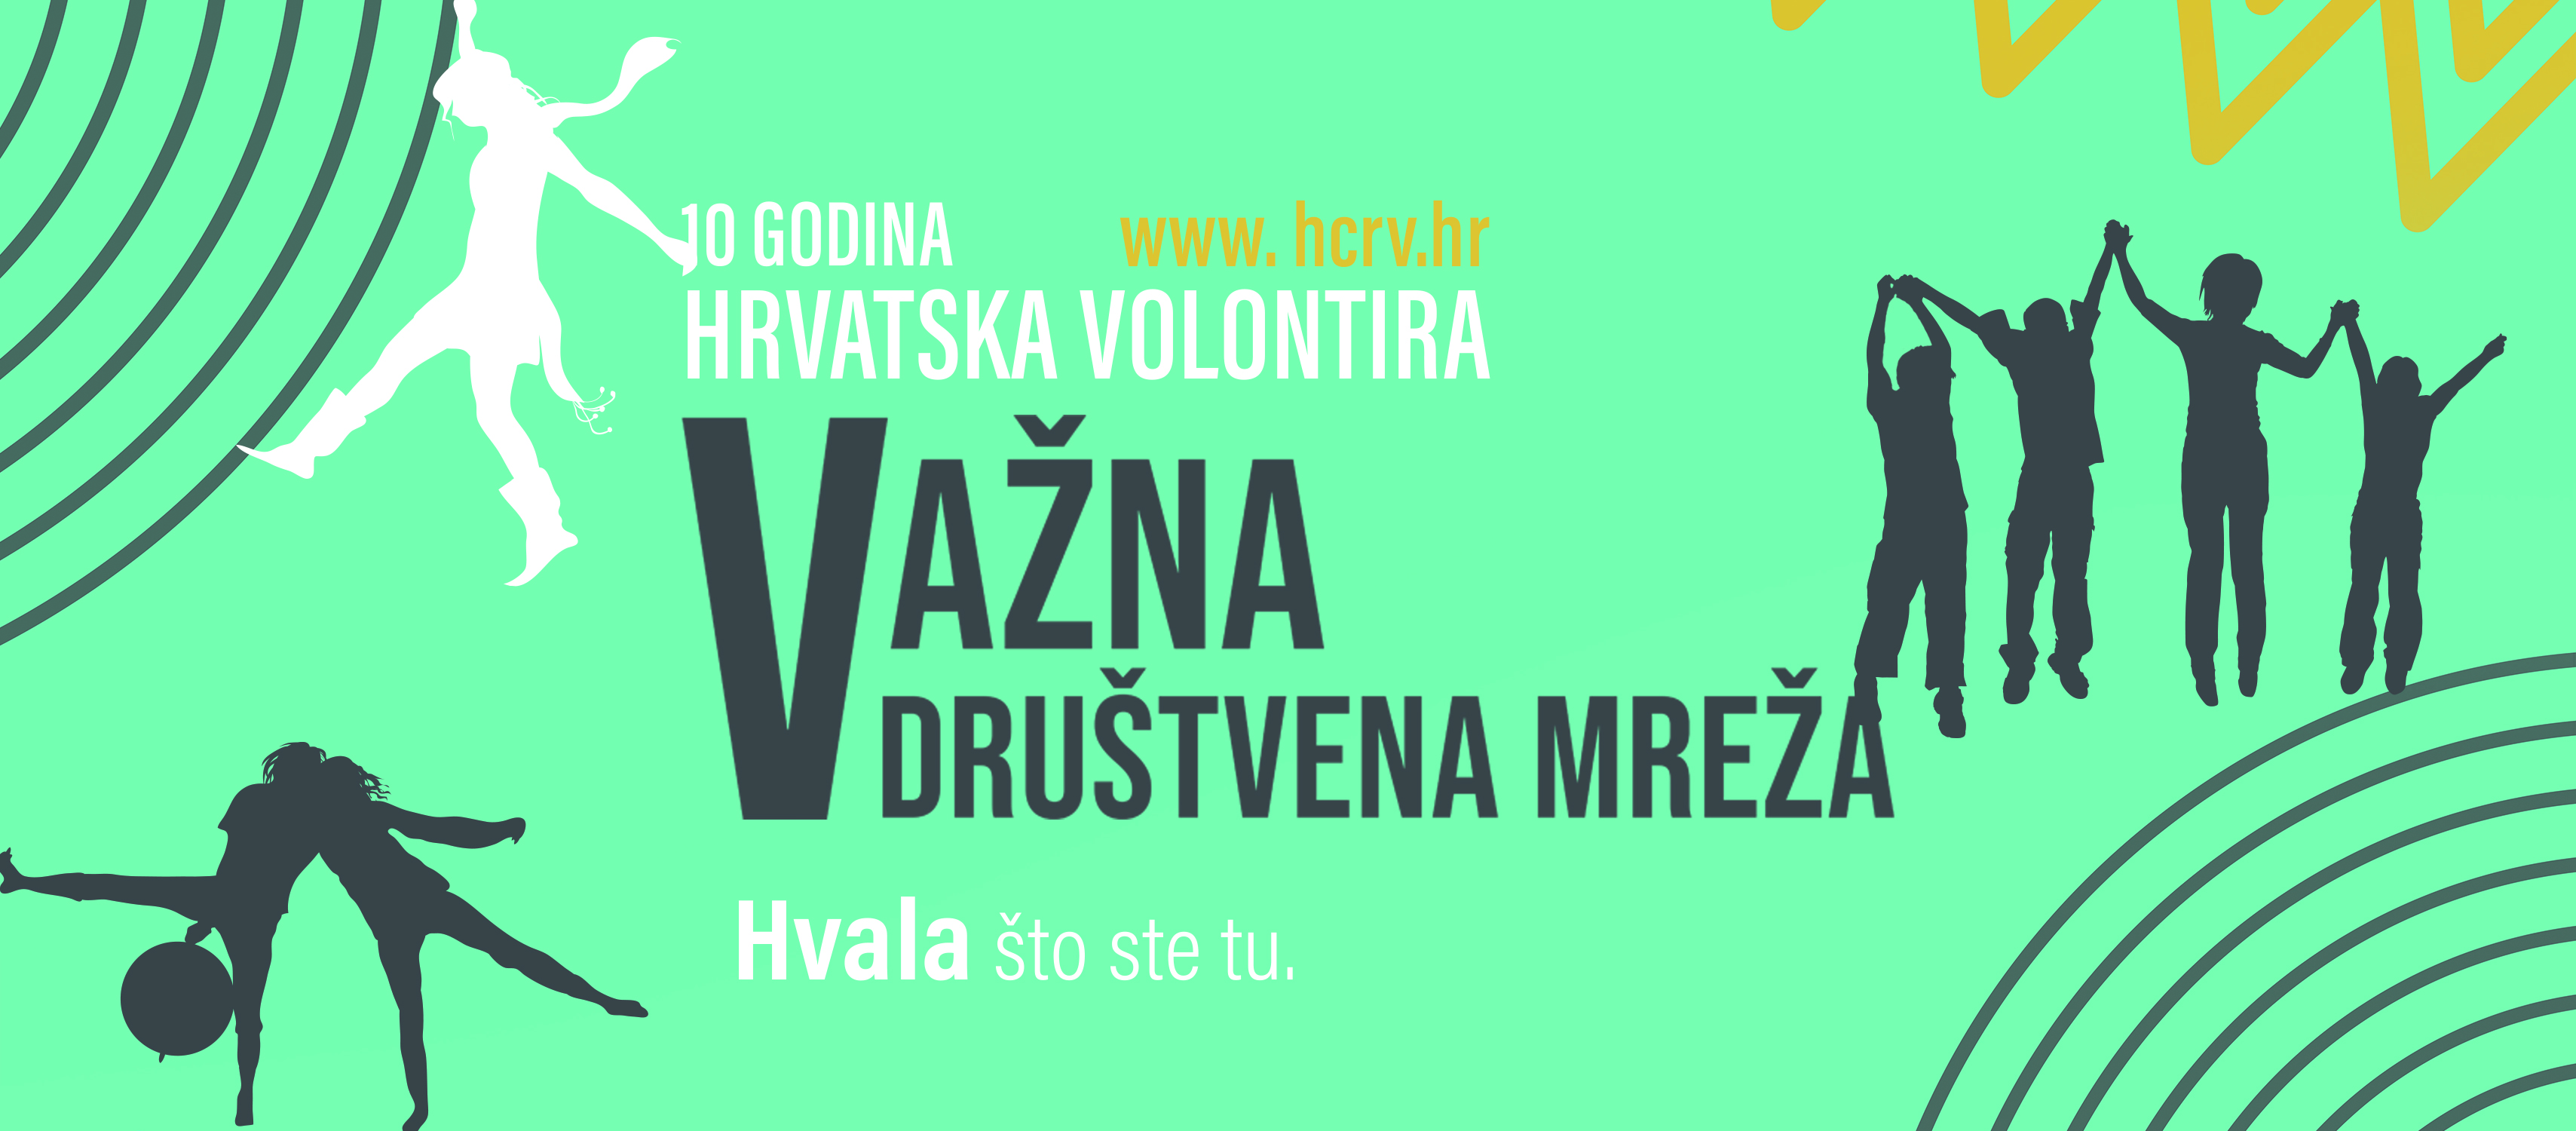 I ove godine Hrvatska volontira! - Slika 1